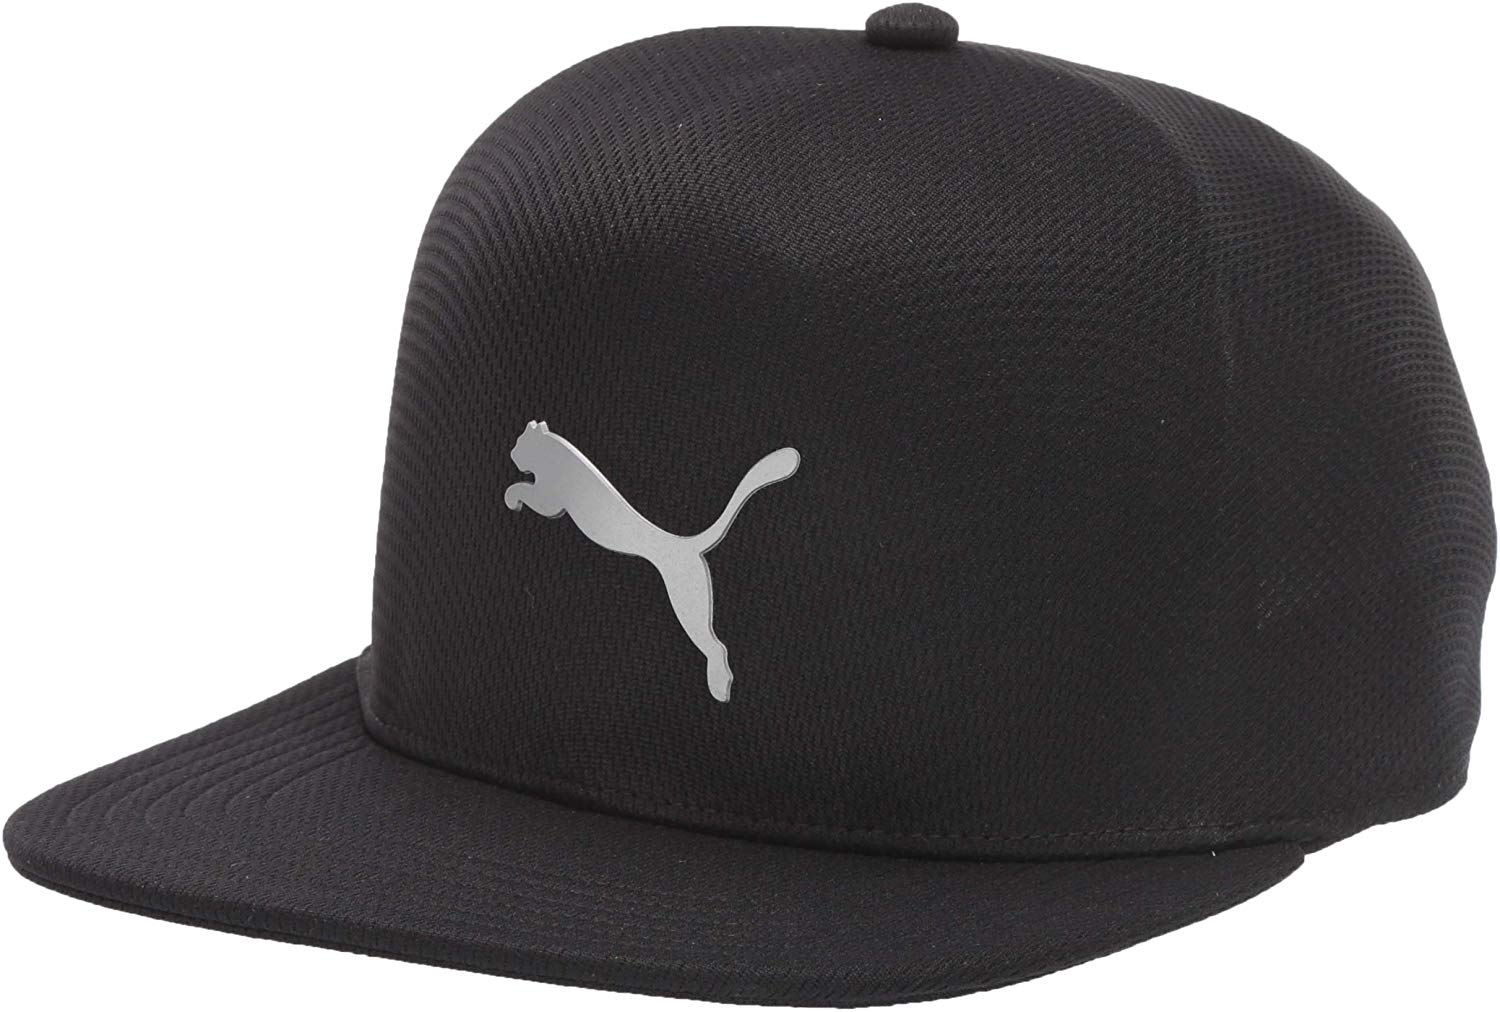 Puma Mens 2018 Evoknit Pro Golf Hats